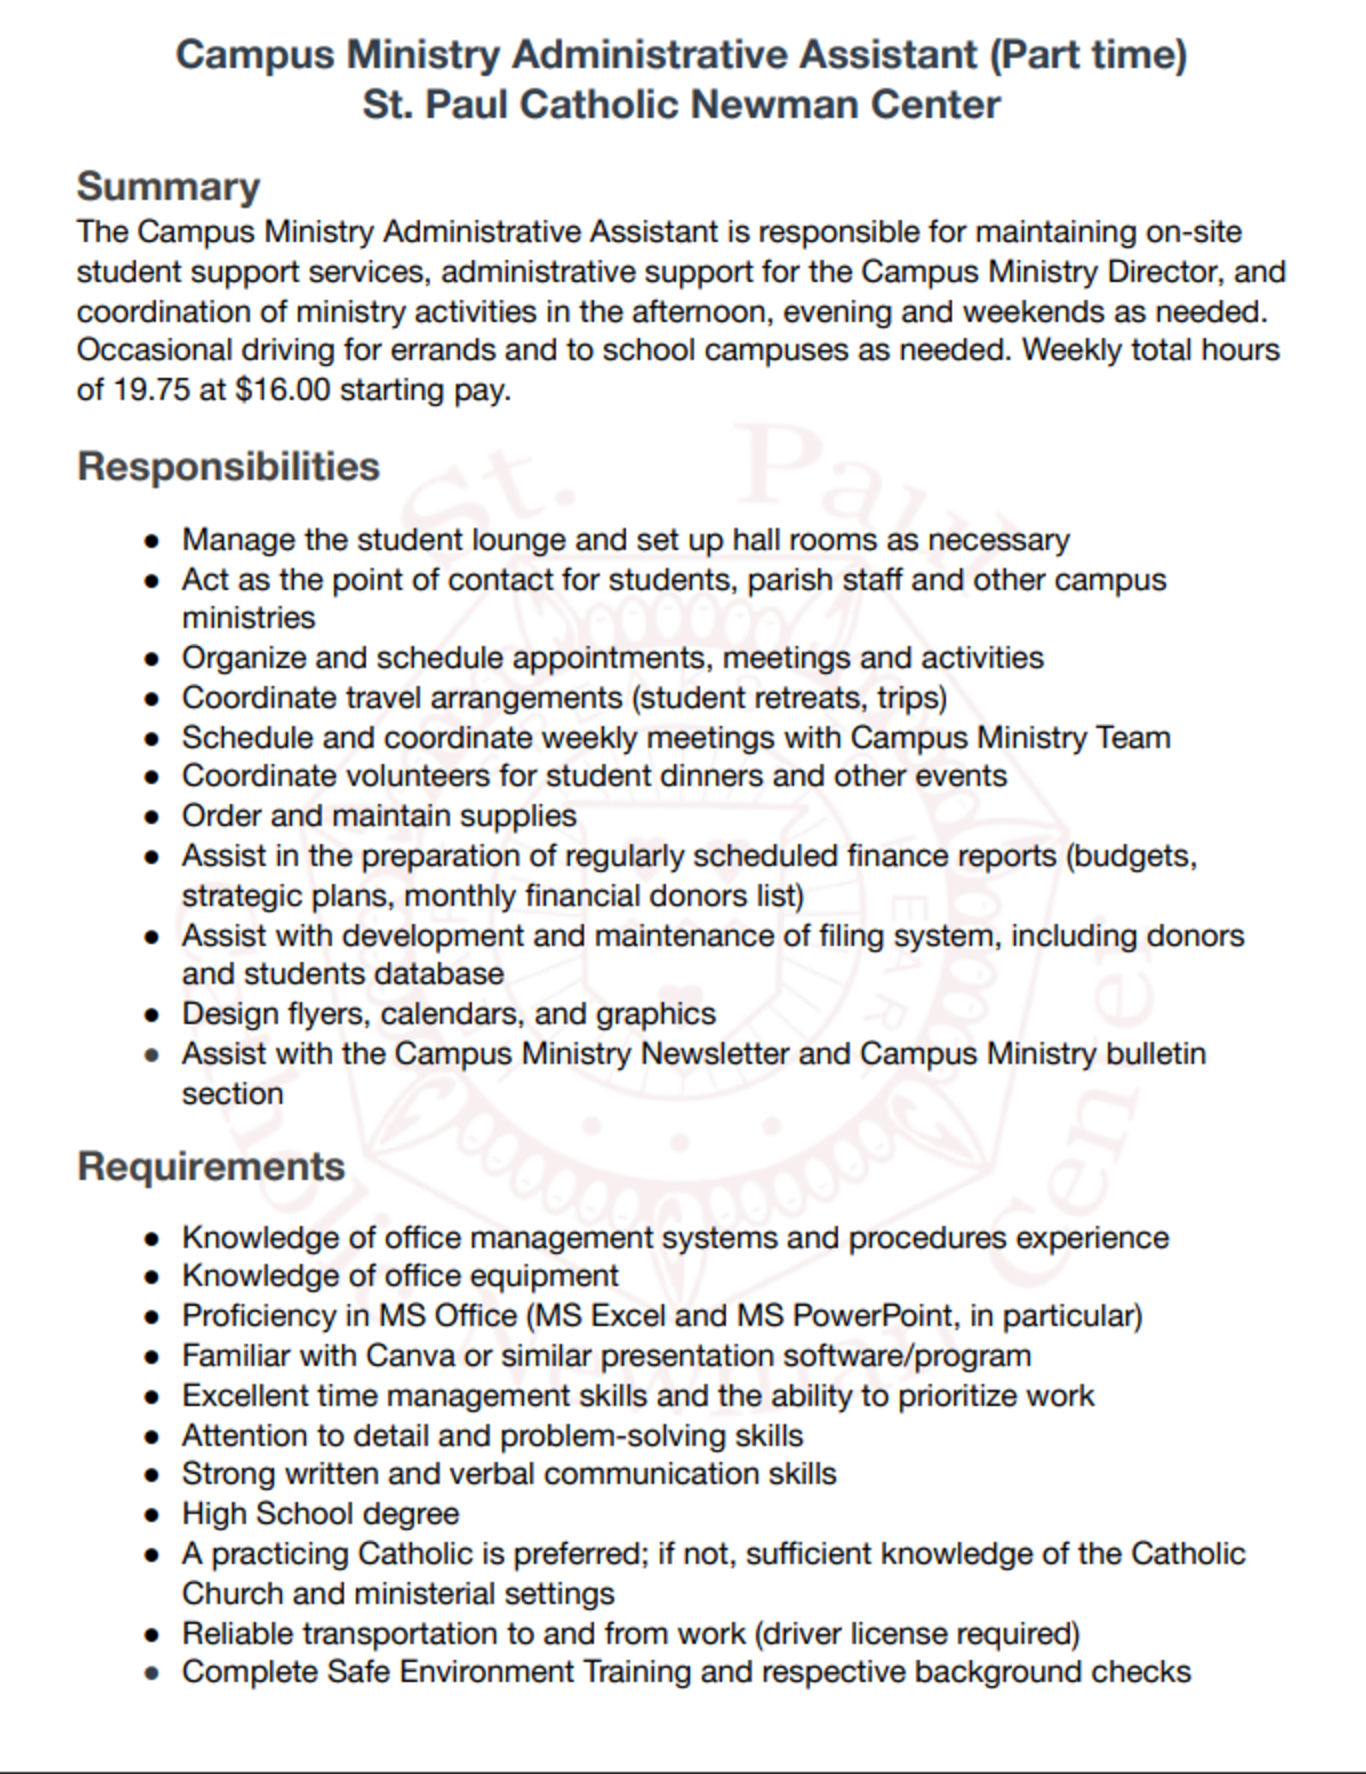 Campus Ministry Admin. Asst. job description